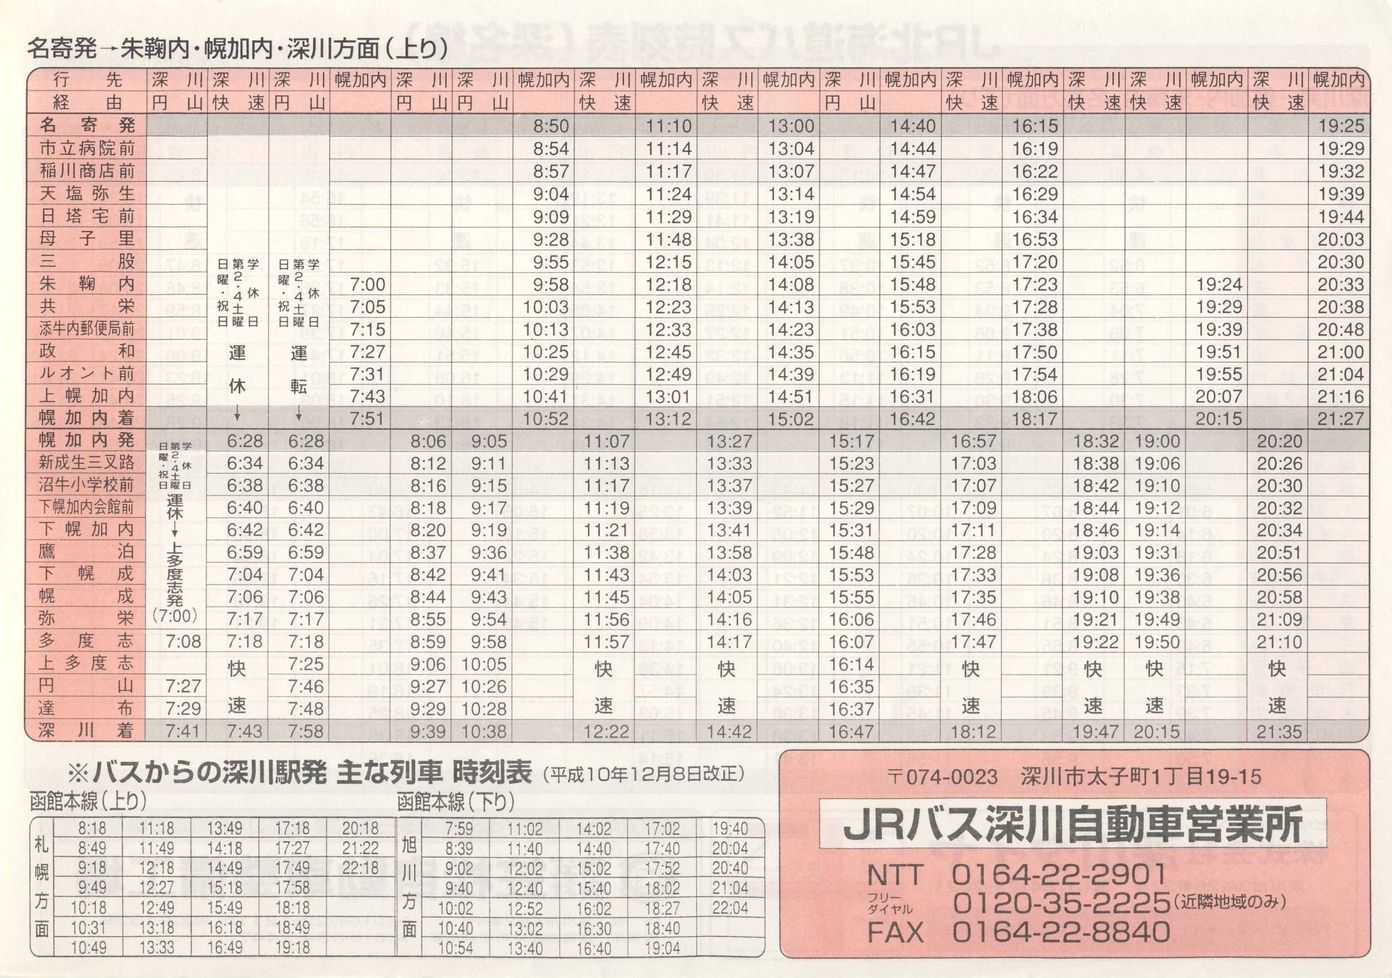 1998-12-01改正_ＪＲ北海道バス_深名線時刻表裏面